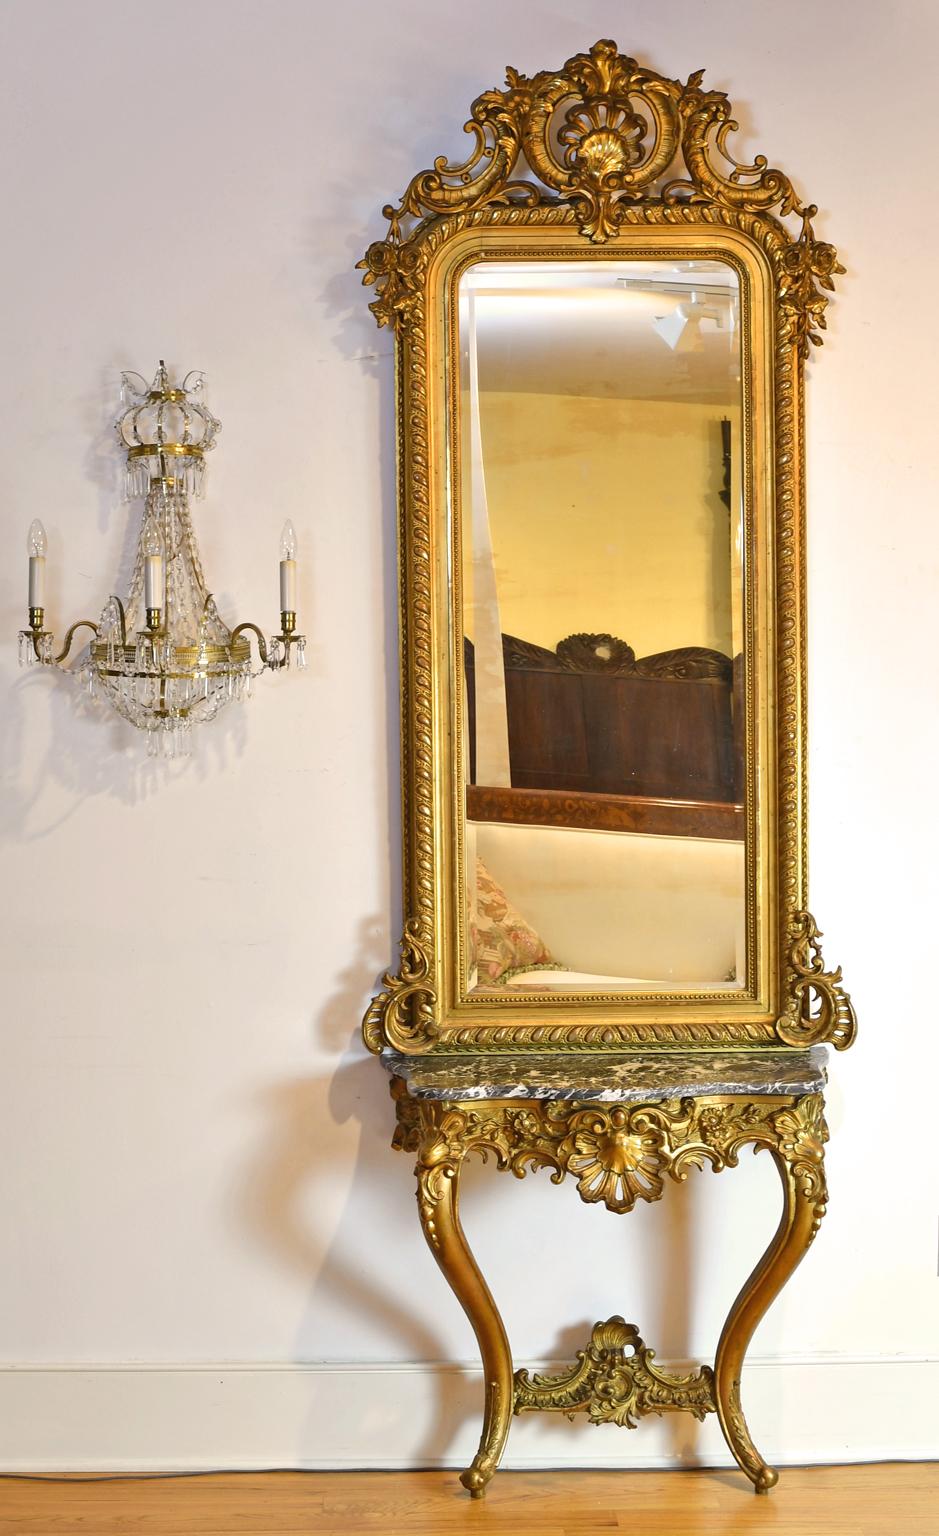 Miroir et console en bois doré de style rococo. La console est une pièce rococo d'époque Louis XV (vers la fin des années 1700), ornée de sculptures de rocaille, d'acanthe et de fleurs, dont des coquilles Saint-Jacques et des marguerites, avec des